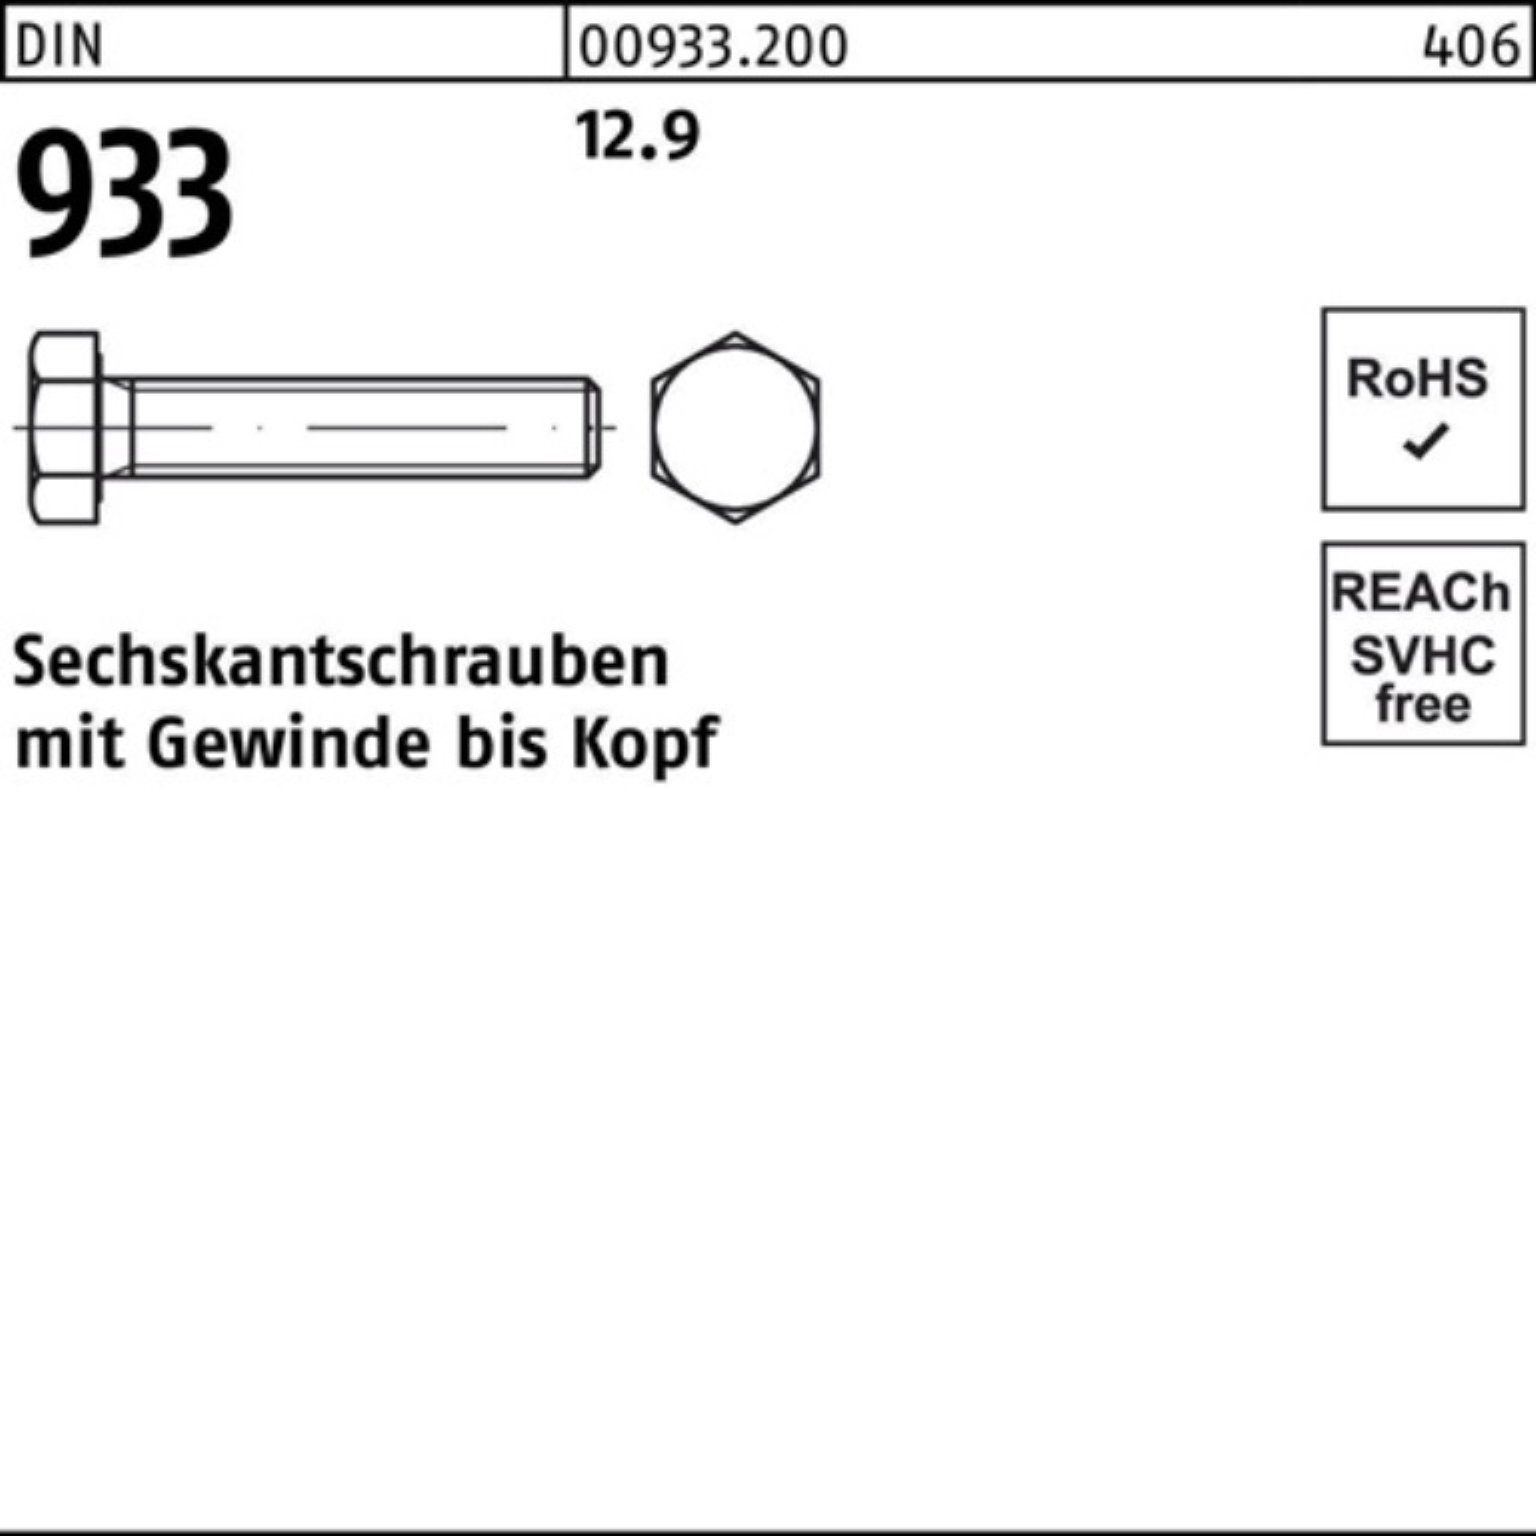 500er M6x Stück Sechskantschraube Sechskantschraube Reyher DIN 933 12.9 933 DIN 500 VG Pack 30